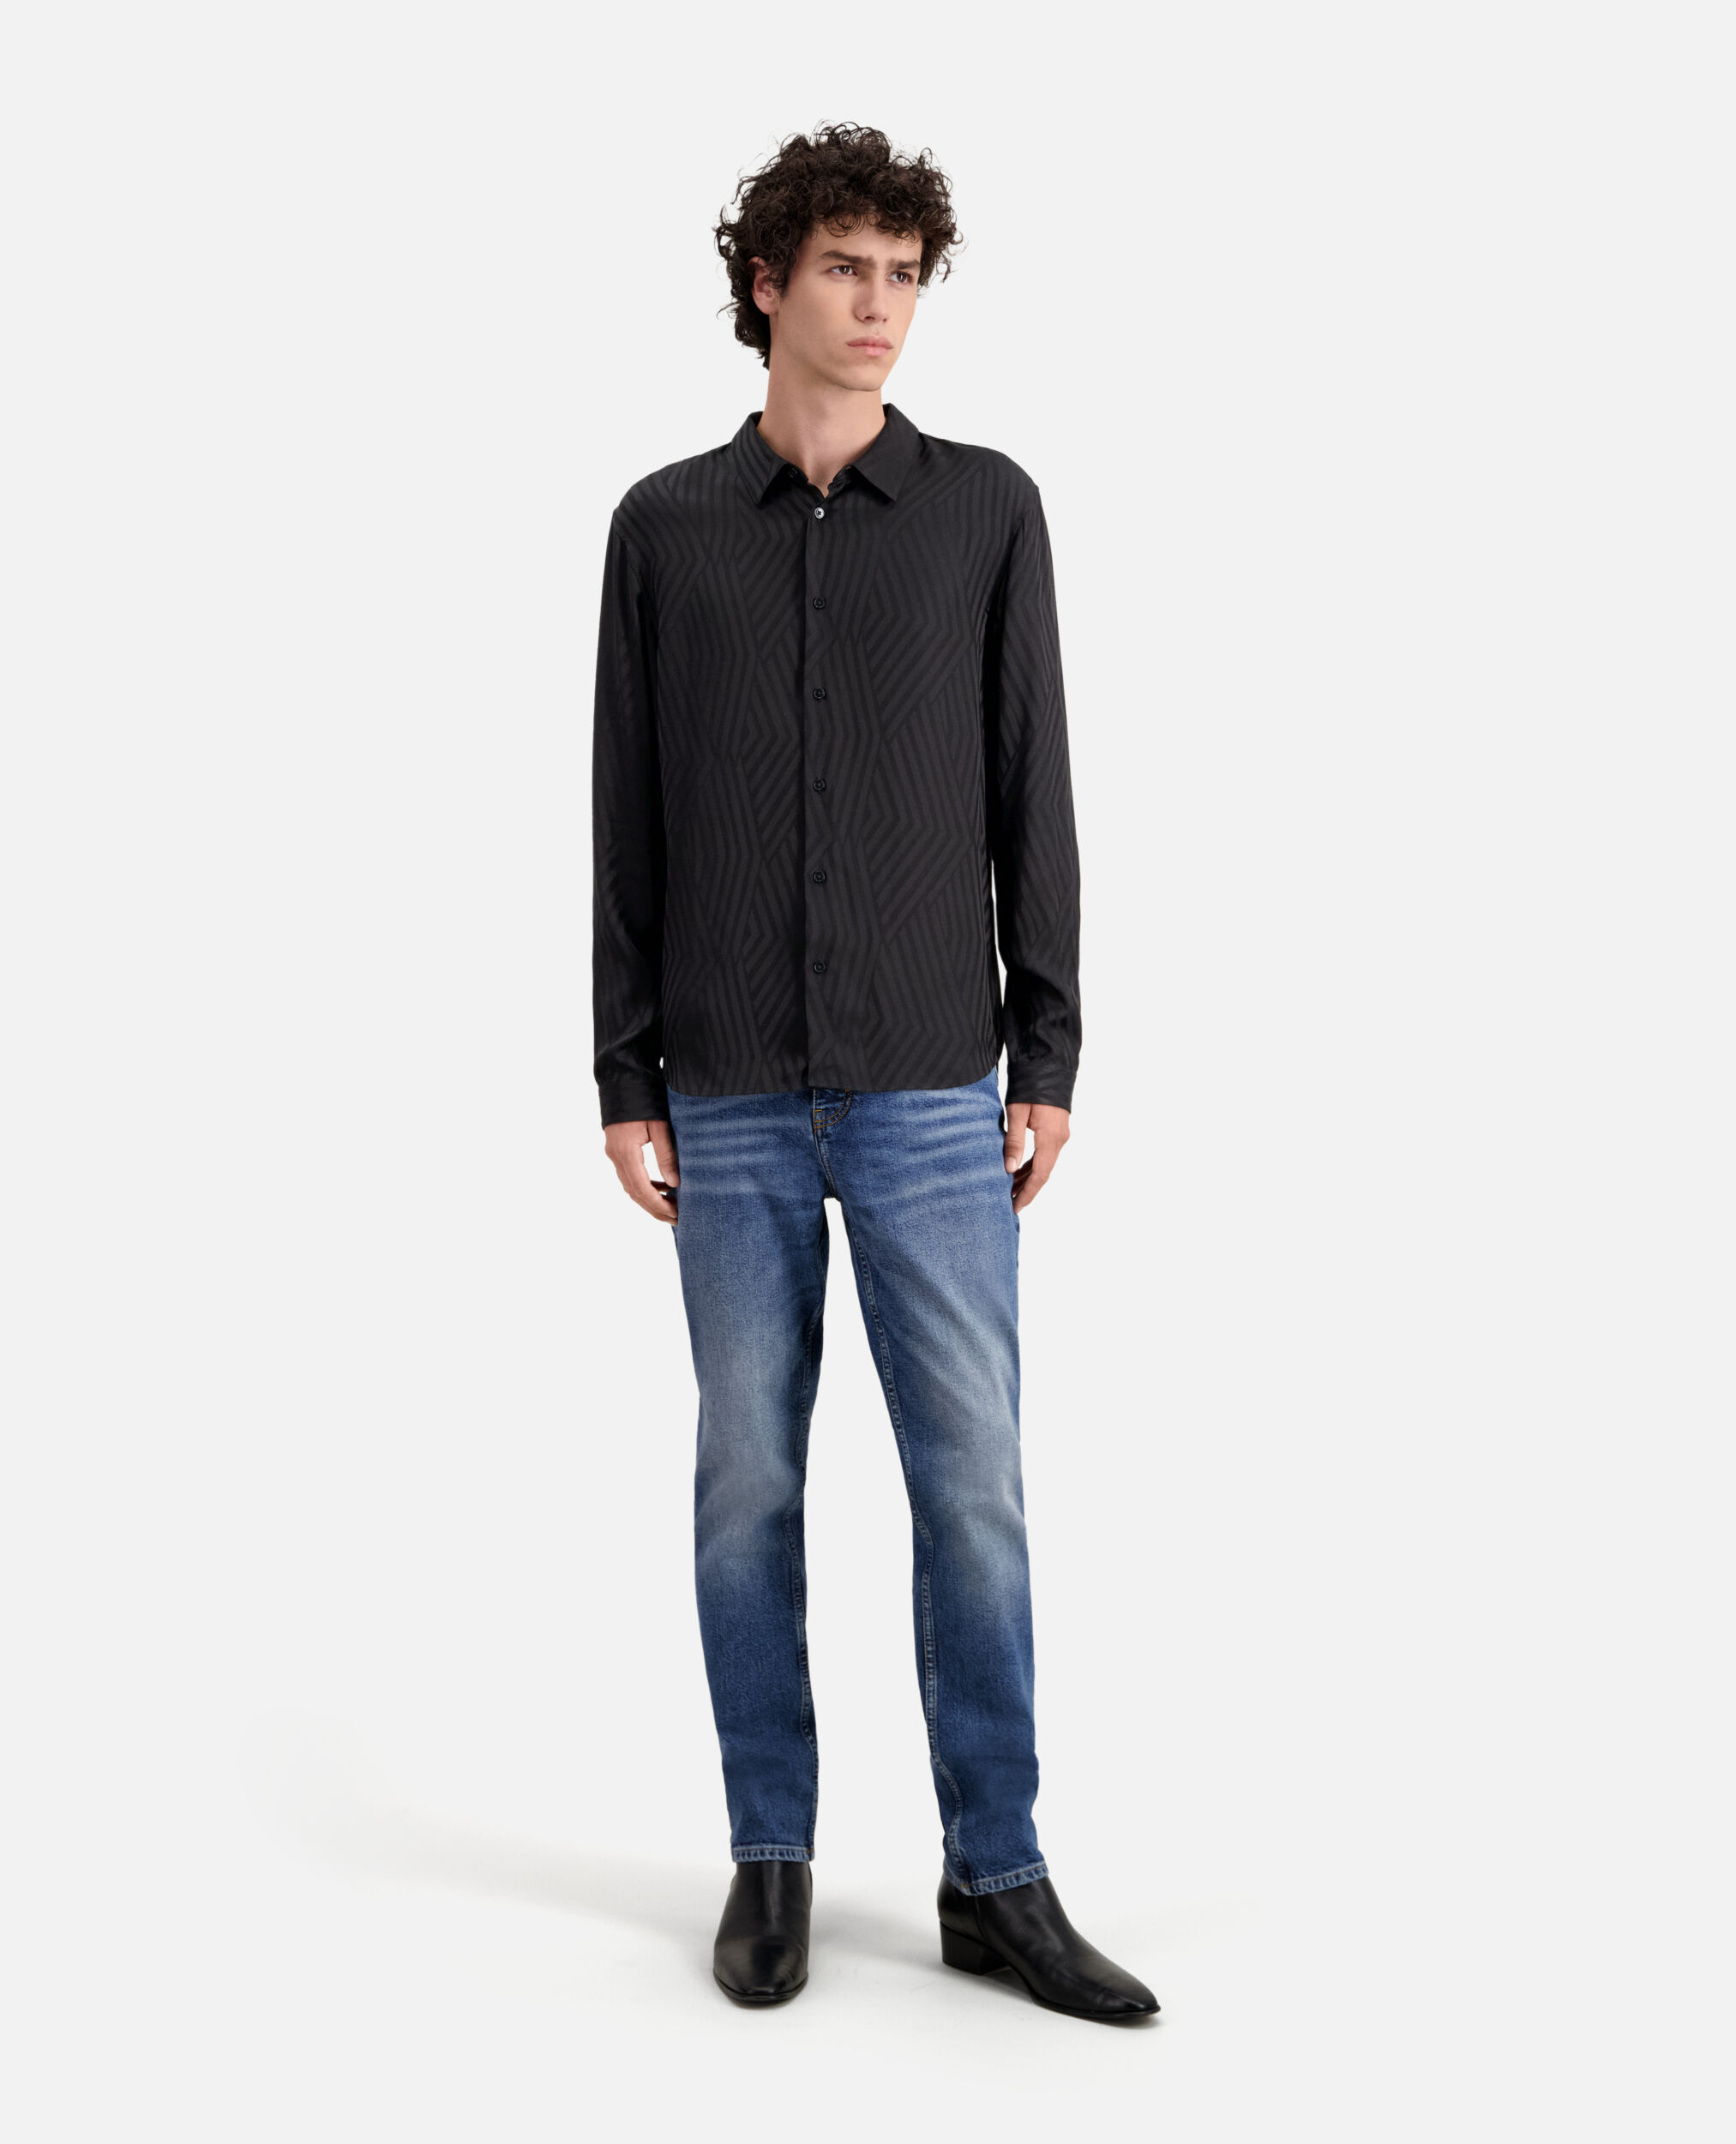 Black geometric jacquard shirt Kooples US - The 